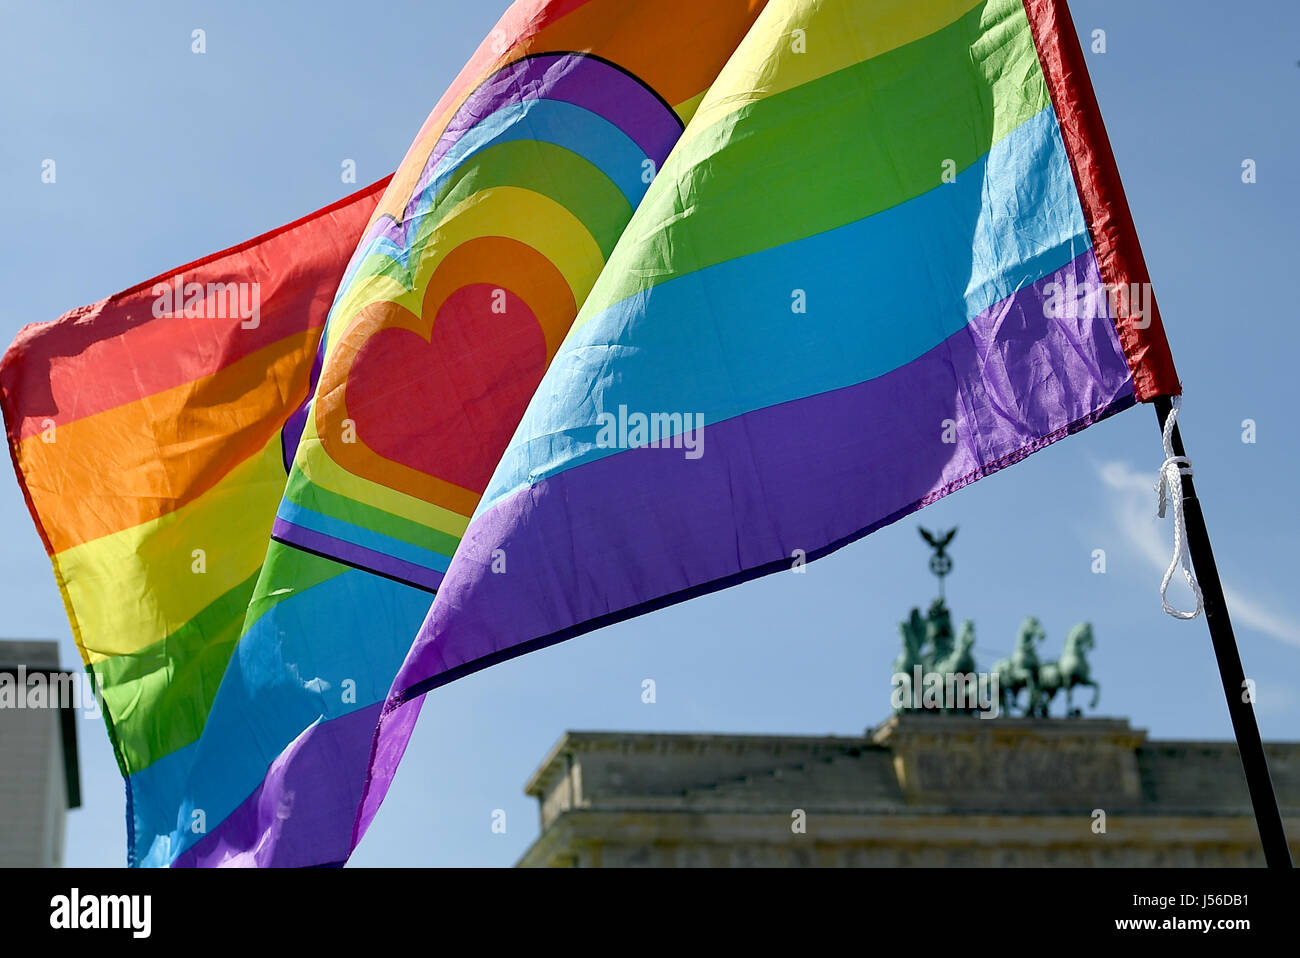 Berlino, Germania. Il 17 maggio 2017. Una bandiera arcobaleno è tenuto aloft davanti alla Porta di Brandeburgo durante il rally per la Giornata Internazionale contro l'Omofobia Transphobia e Biphobia a Berlino, Germania, 17 maggio 2017. Foto: Britta Pedersen/dpa-Zentralbild/dpa/Alamy Live News Foto Stock